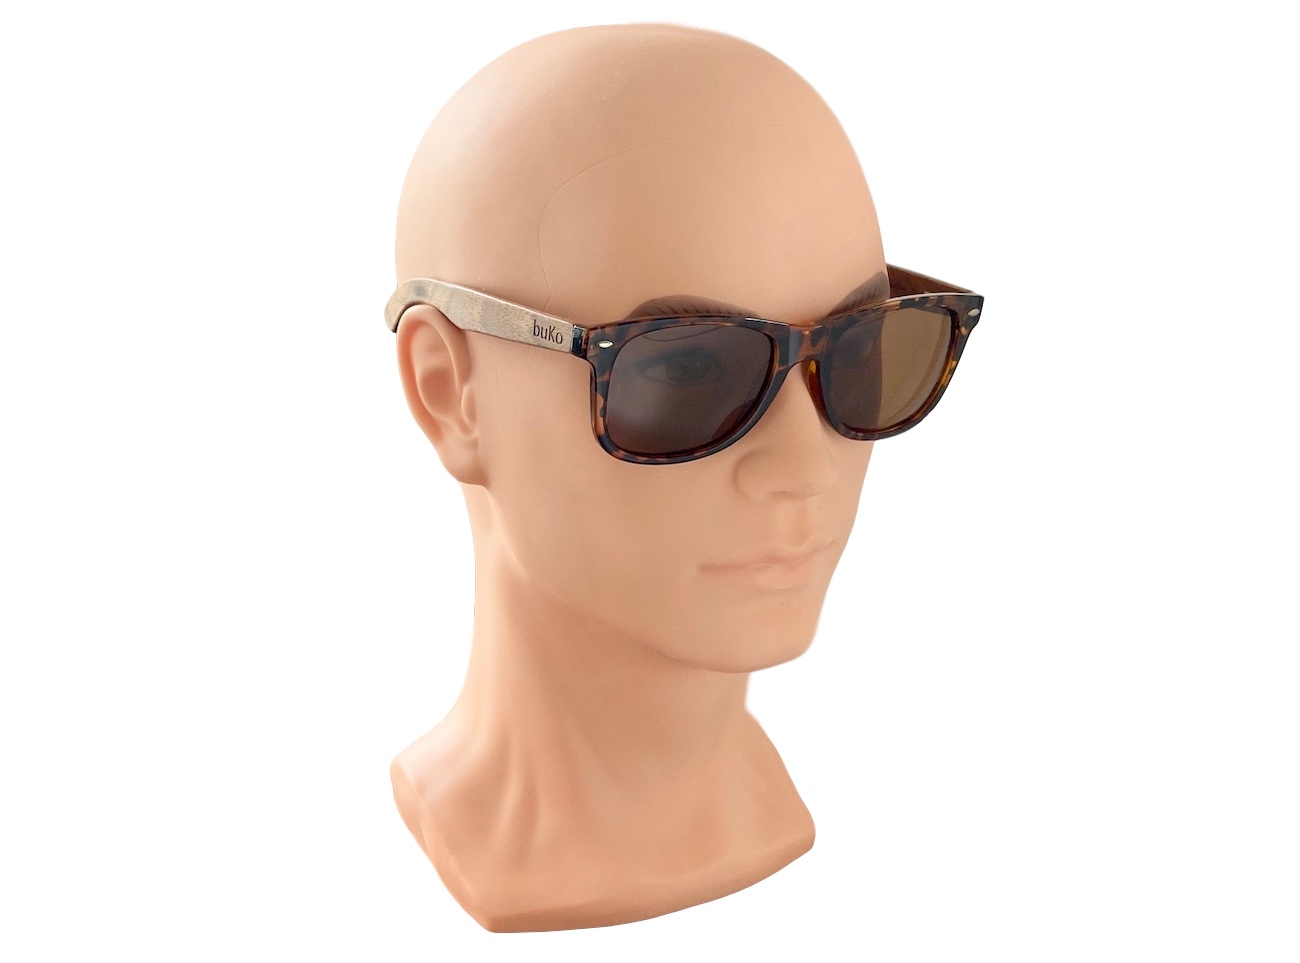 Drift wood sunglasses on male model